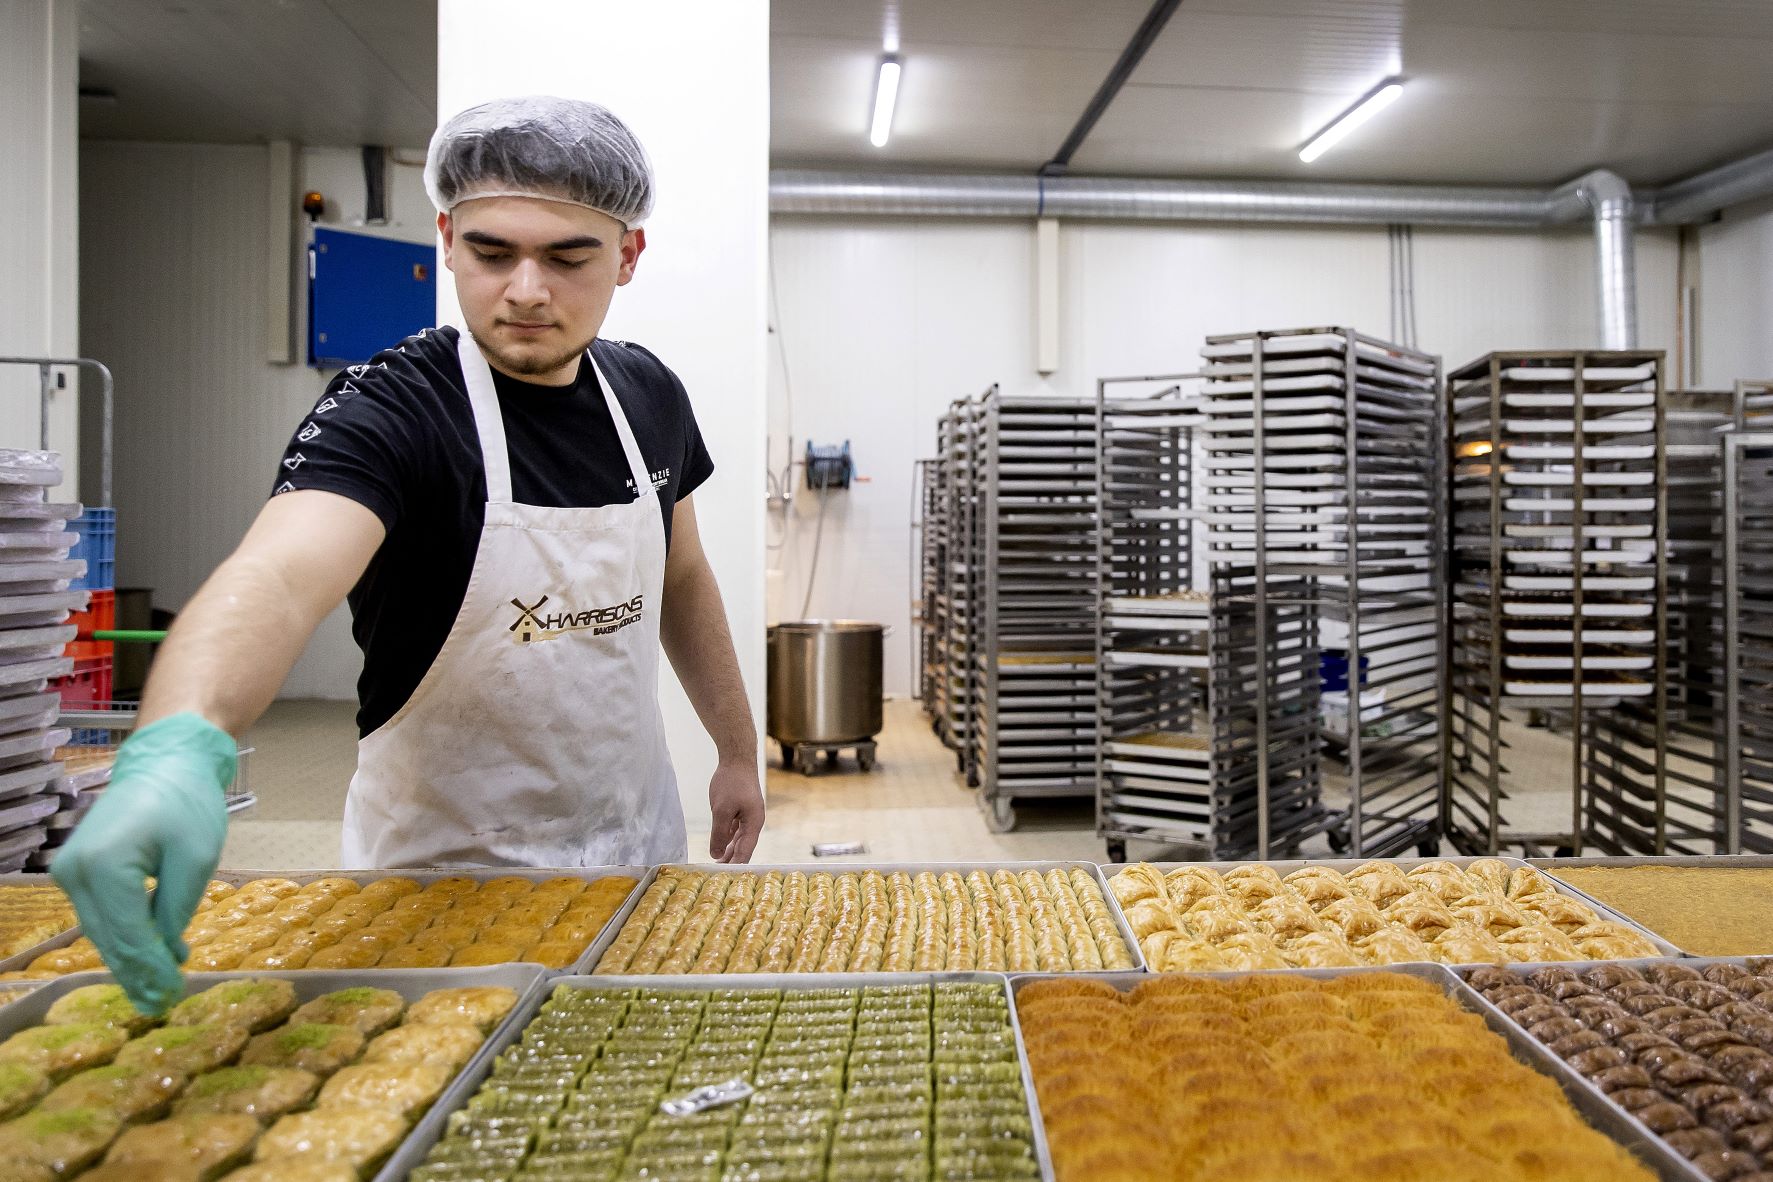 Un employé prépare des baklavas dans une épicerie turque à Amsterdam (AFP/Koen van Weel)